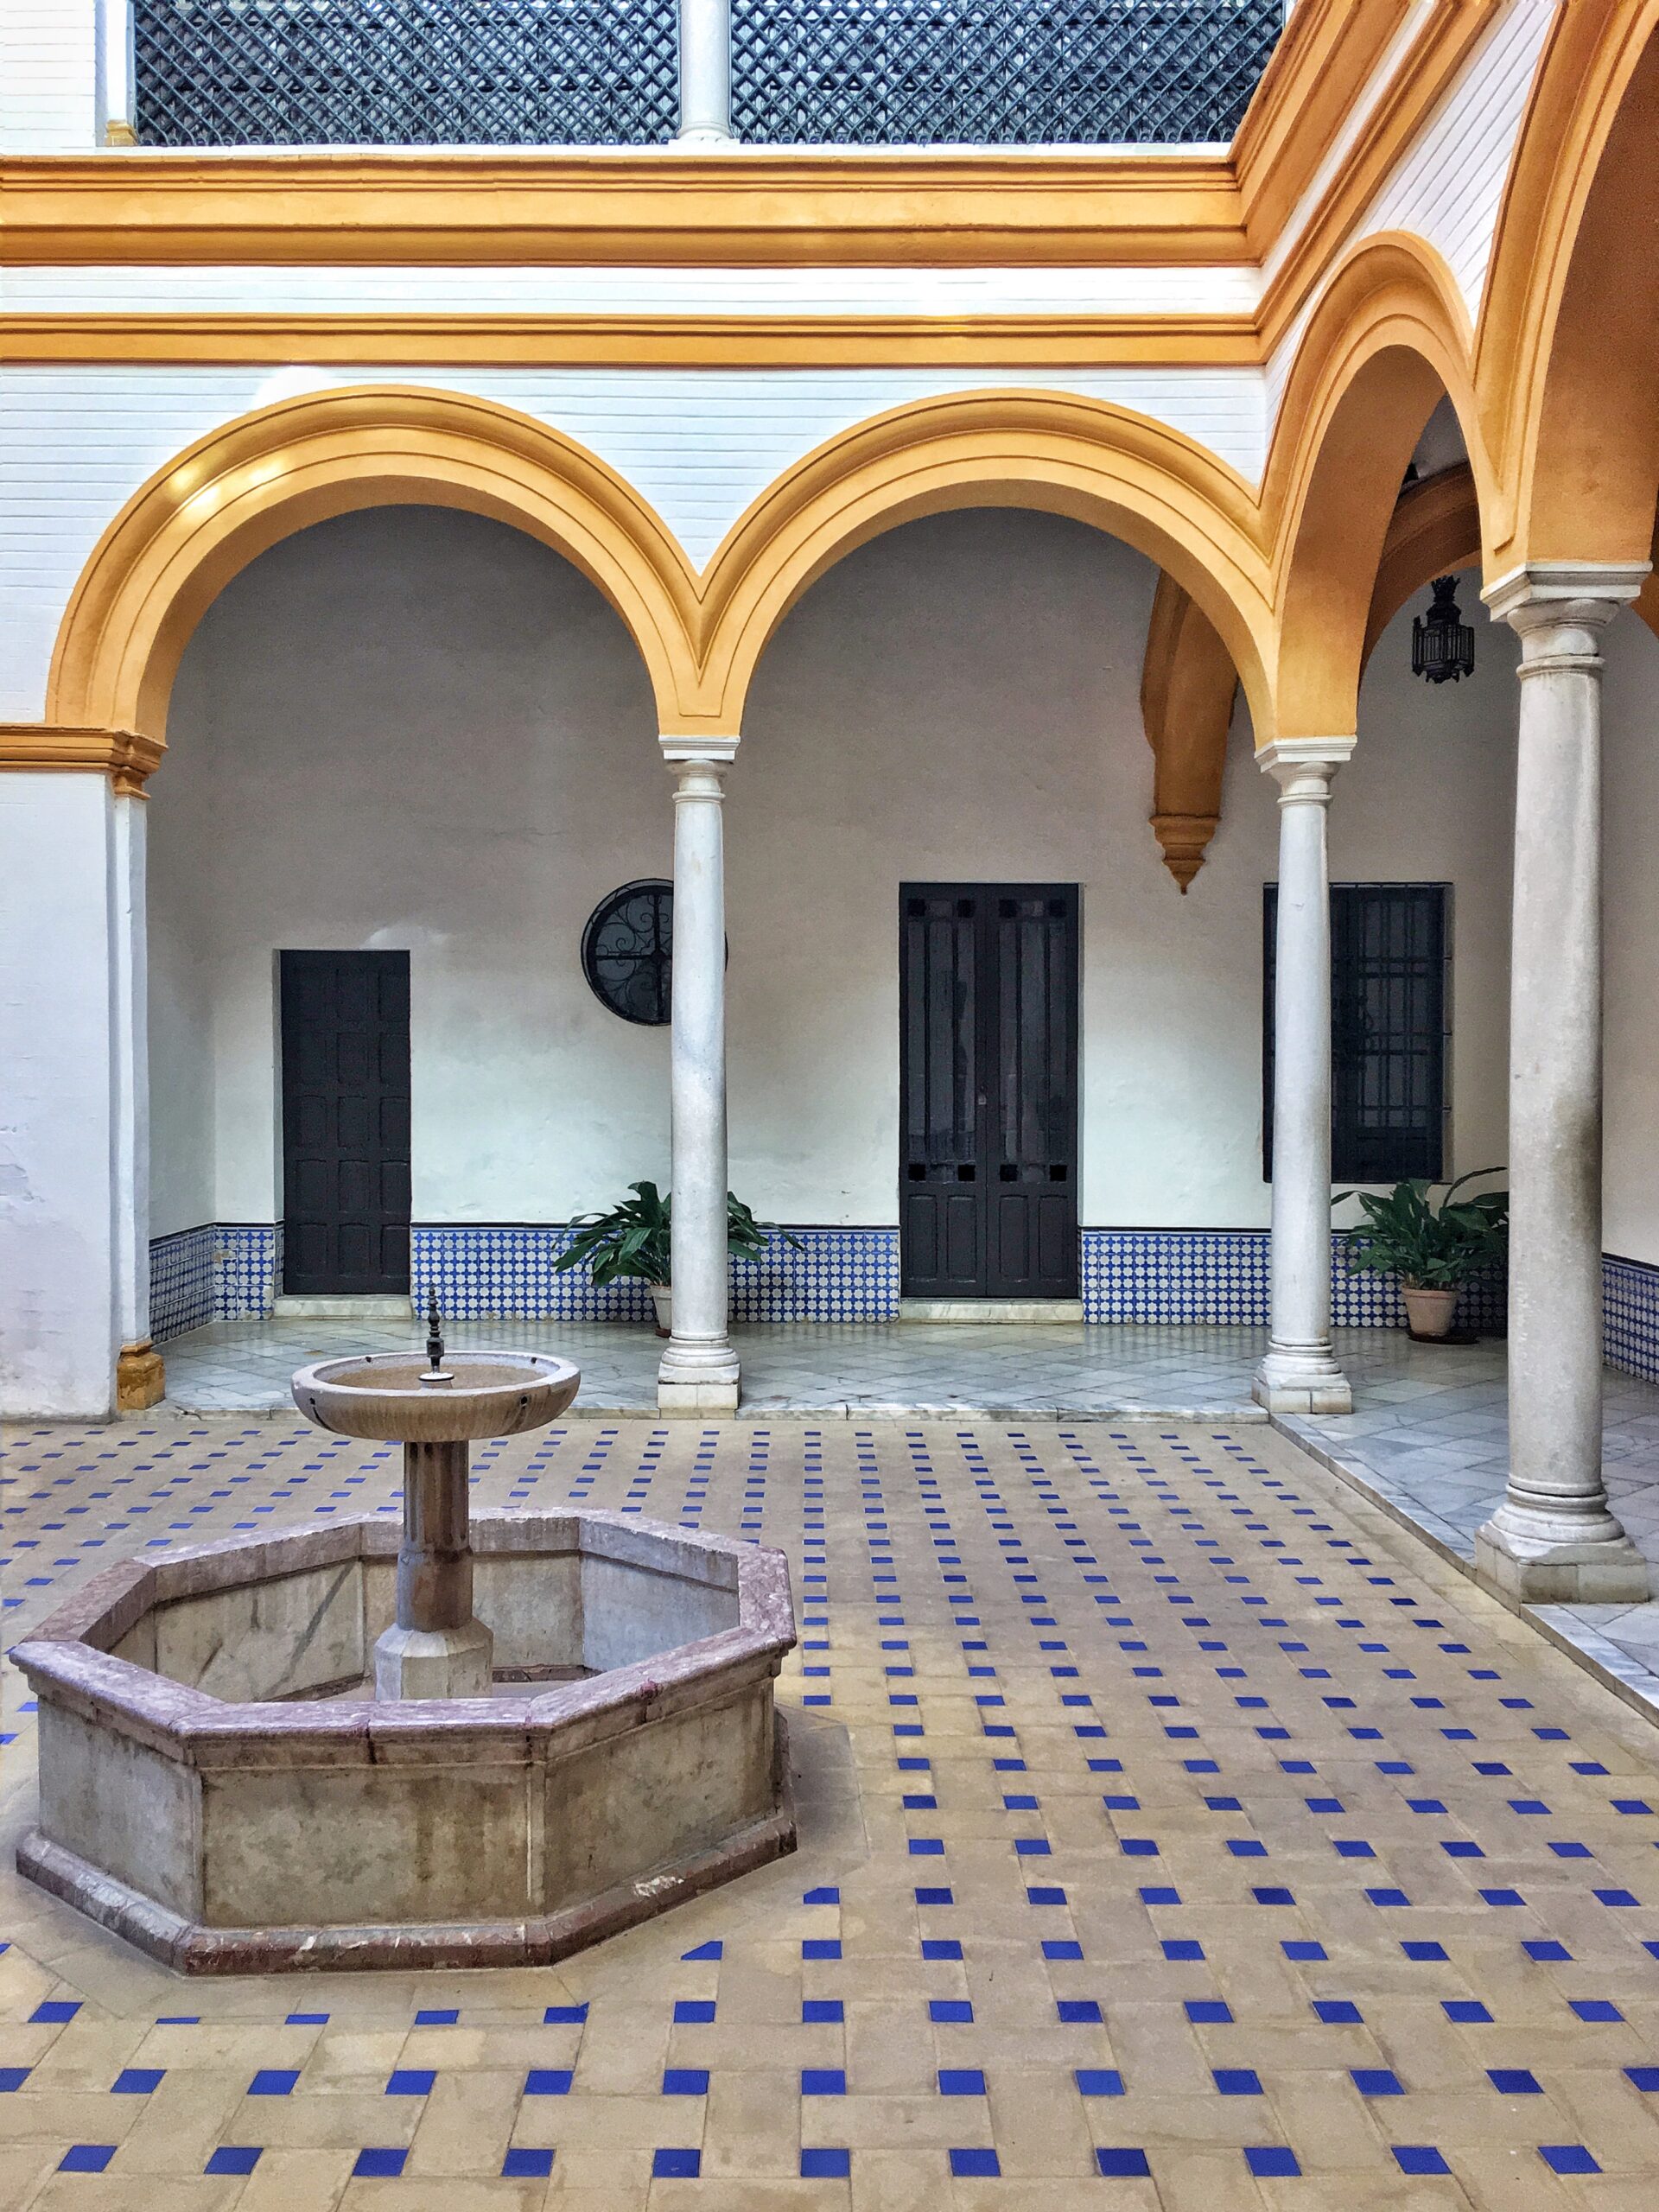 Interior courtyard of Real Alcazar